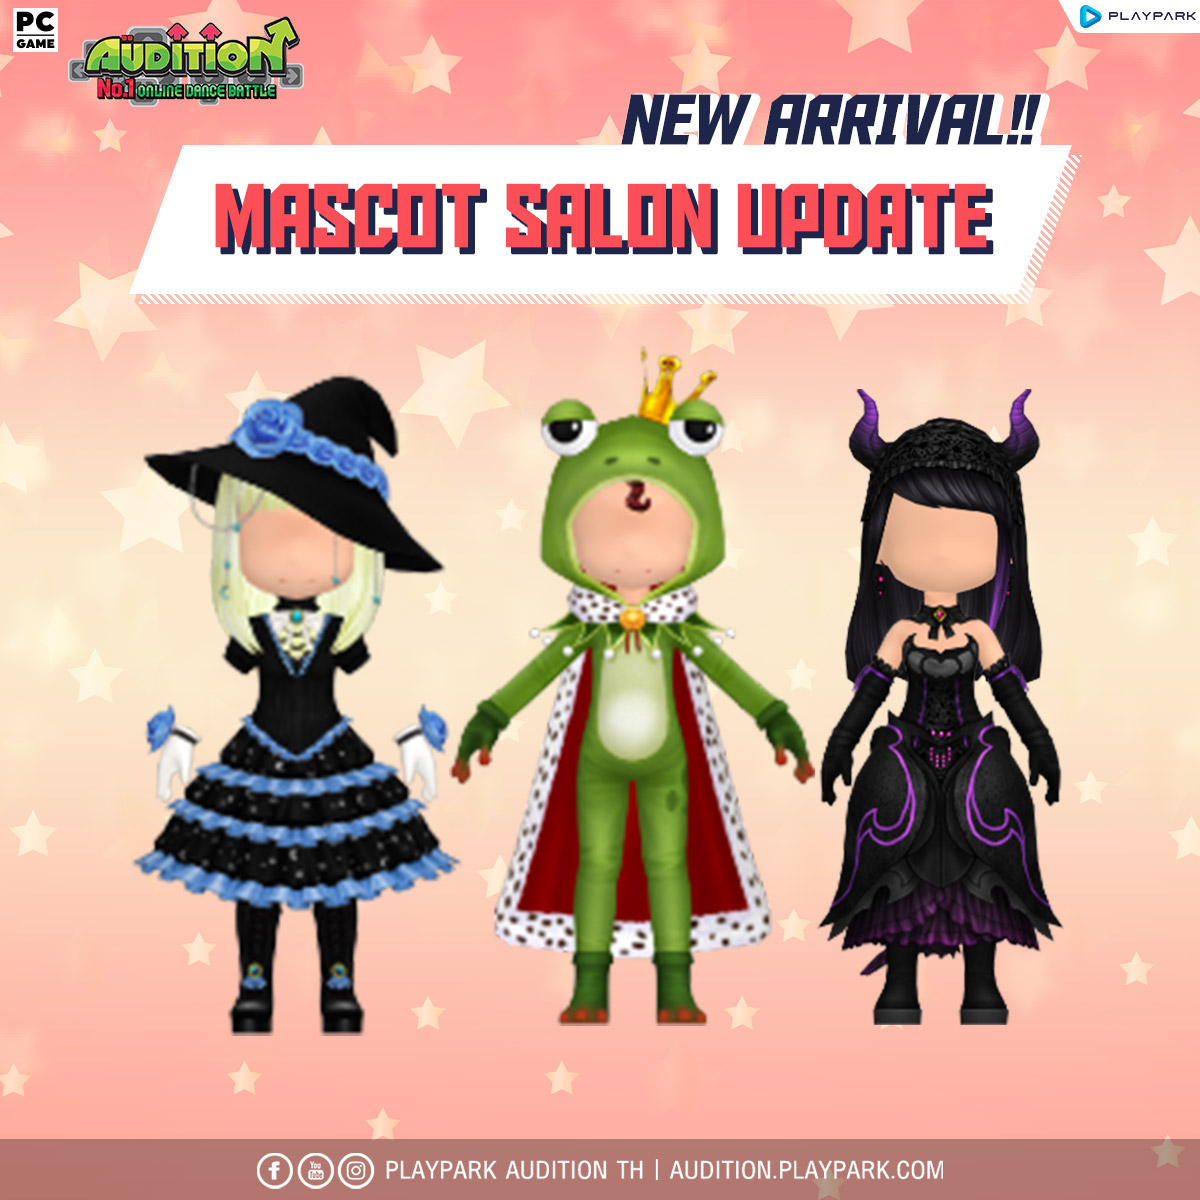 5 ตุลาคมนี้ Update เพลงใหม่, Halloween Lucky Game, Mascot Salon และไอเทมใหม่!!  